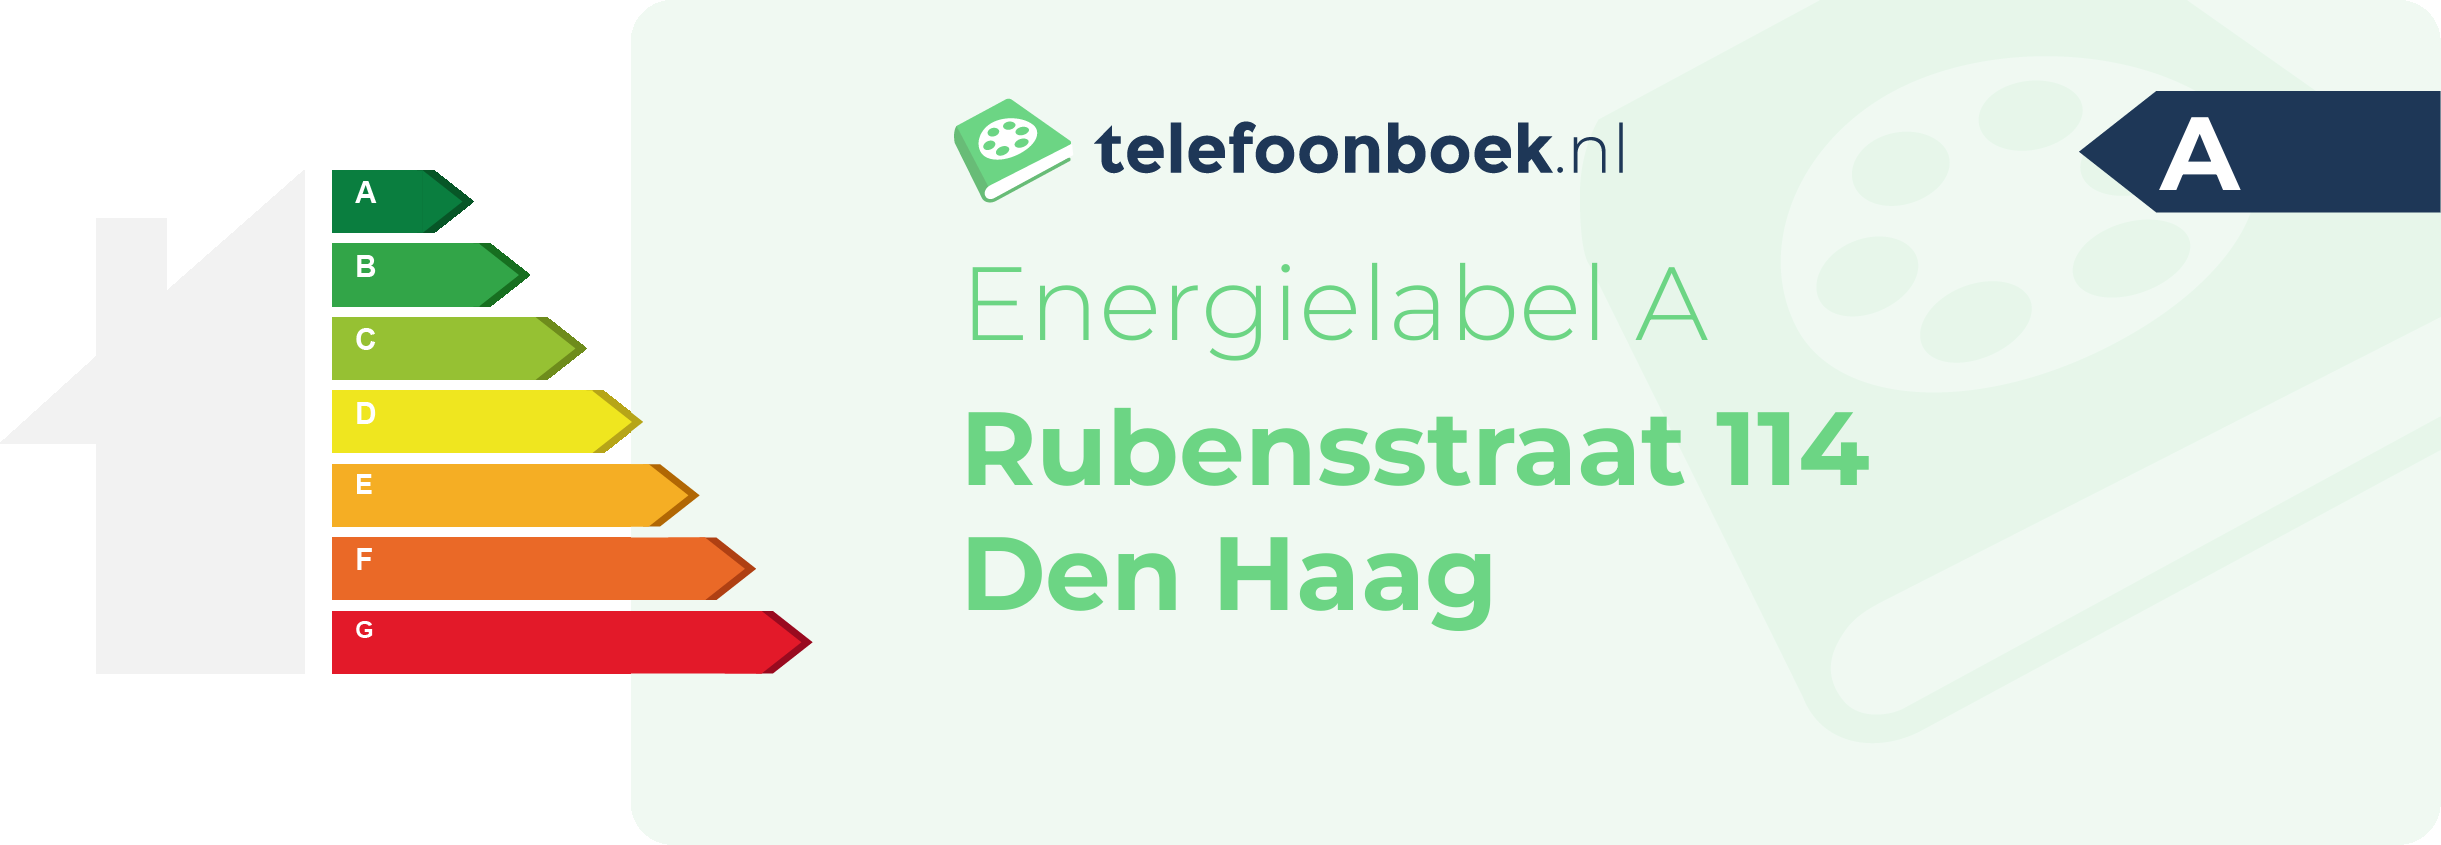 Energielabel Rubensstraat 114 Den Haag